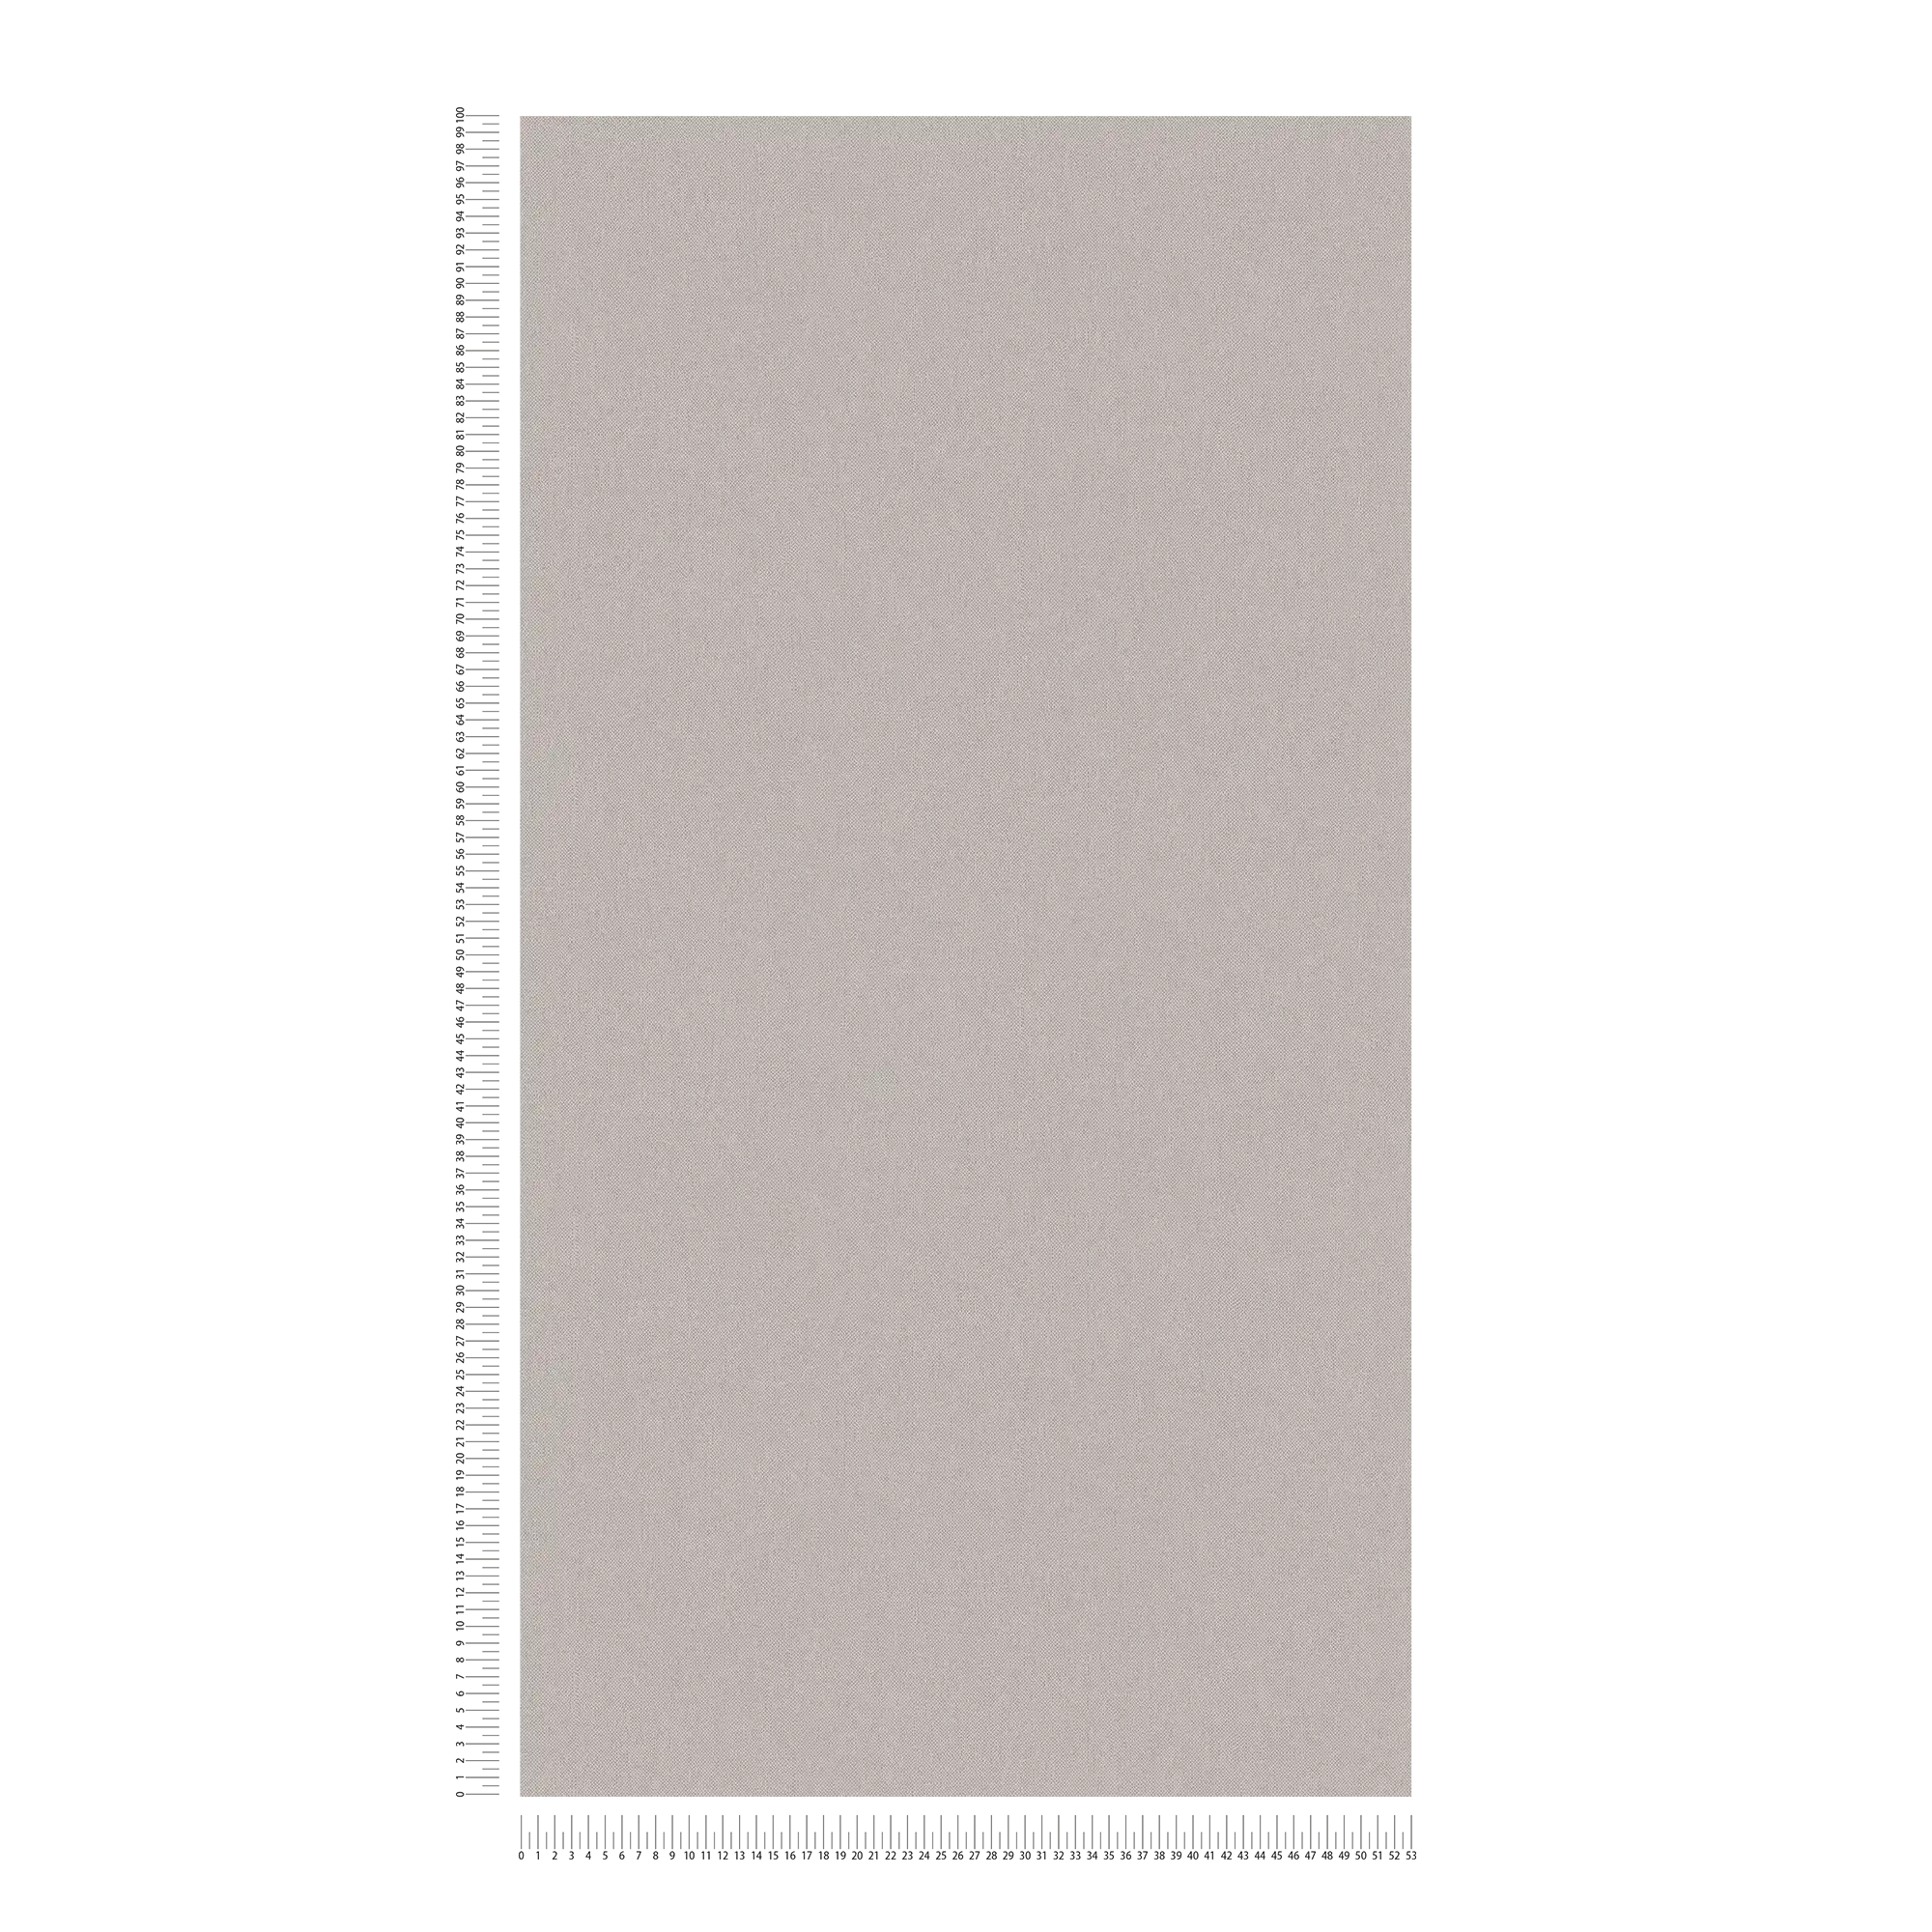             Carta da parati taupe tinta unita grigio beige con aspetto tessile - grigio, marrone
        